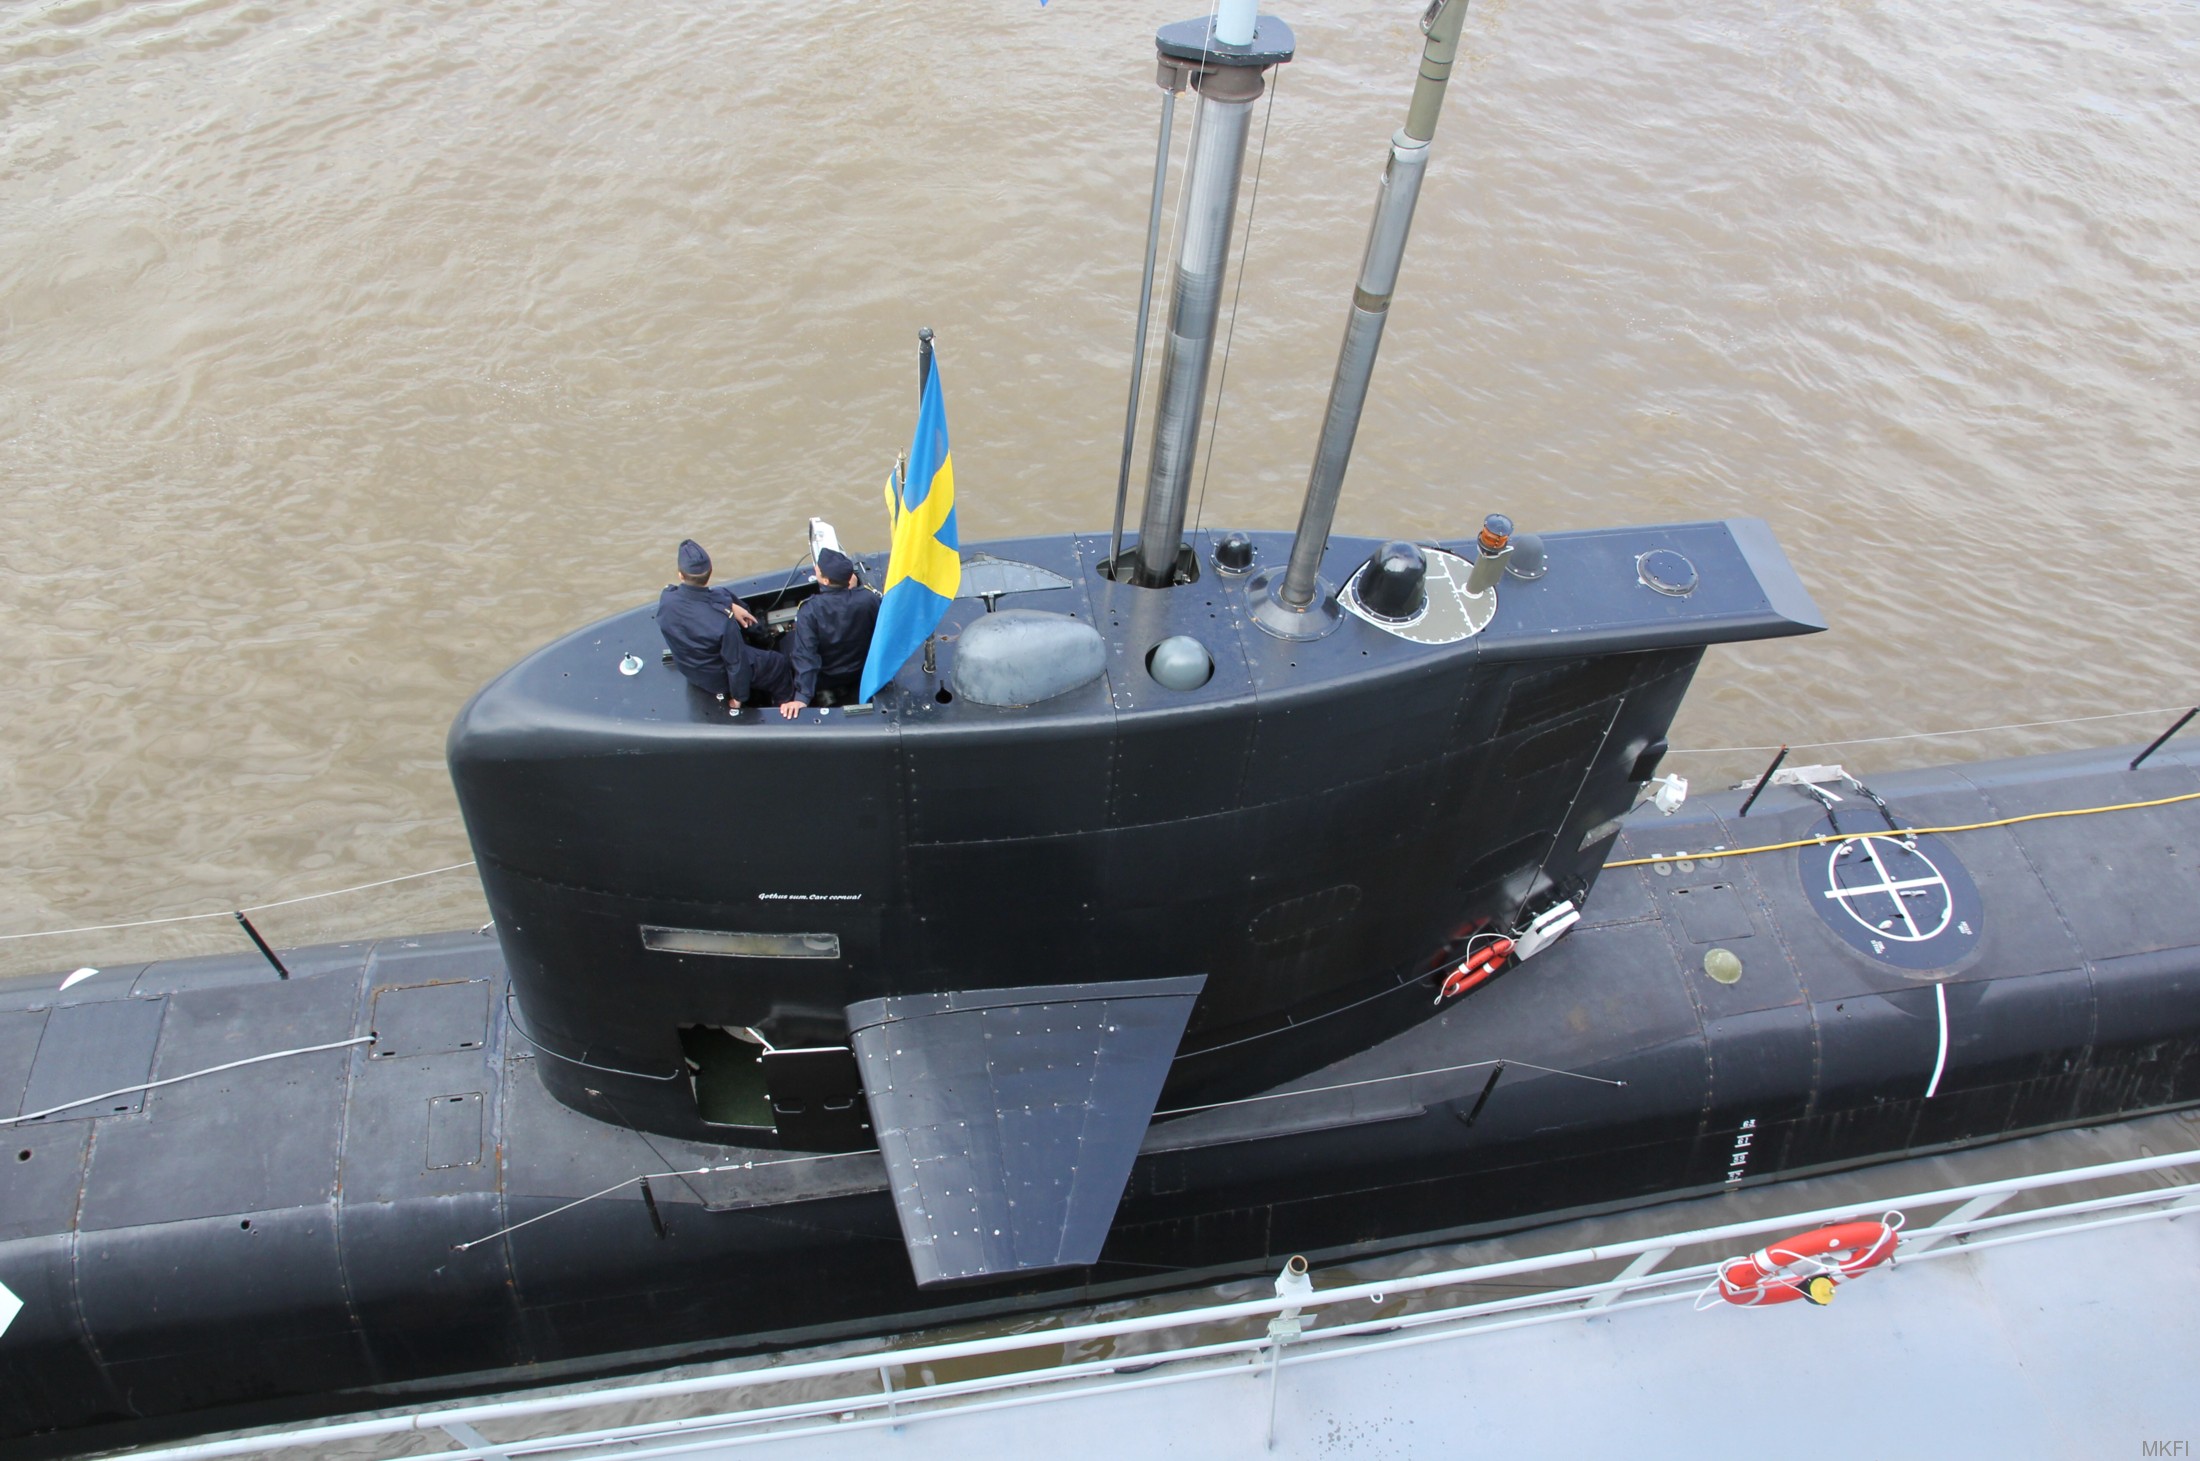 hswms hms gotland gtd class submarine ssk swedish navy svenska marinen försvarsmakten kockums 15